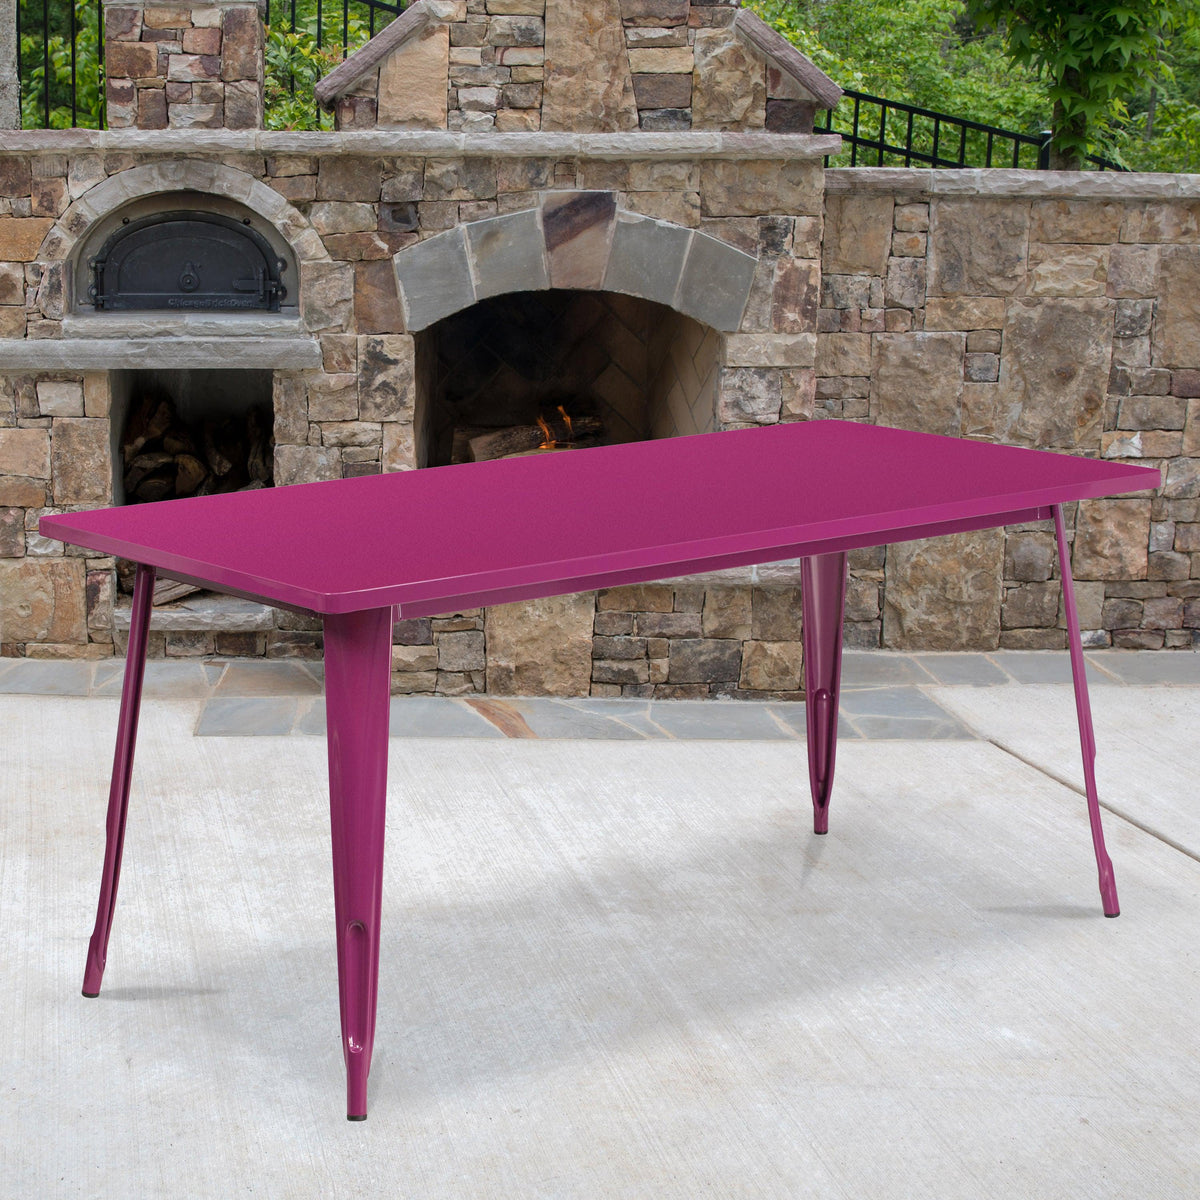 Purple |#| 31.5inch x 63inch Rectangular Purple Metal Indoor-Outdoor Table - Industrial Table